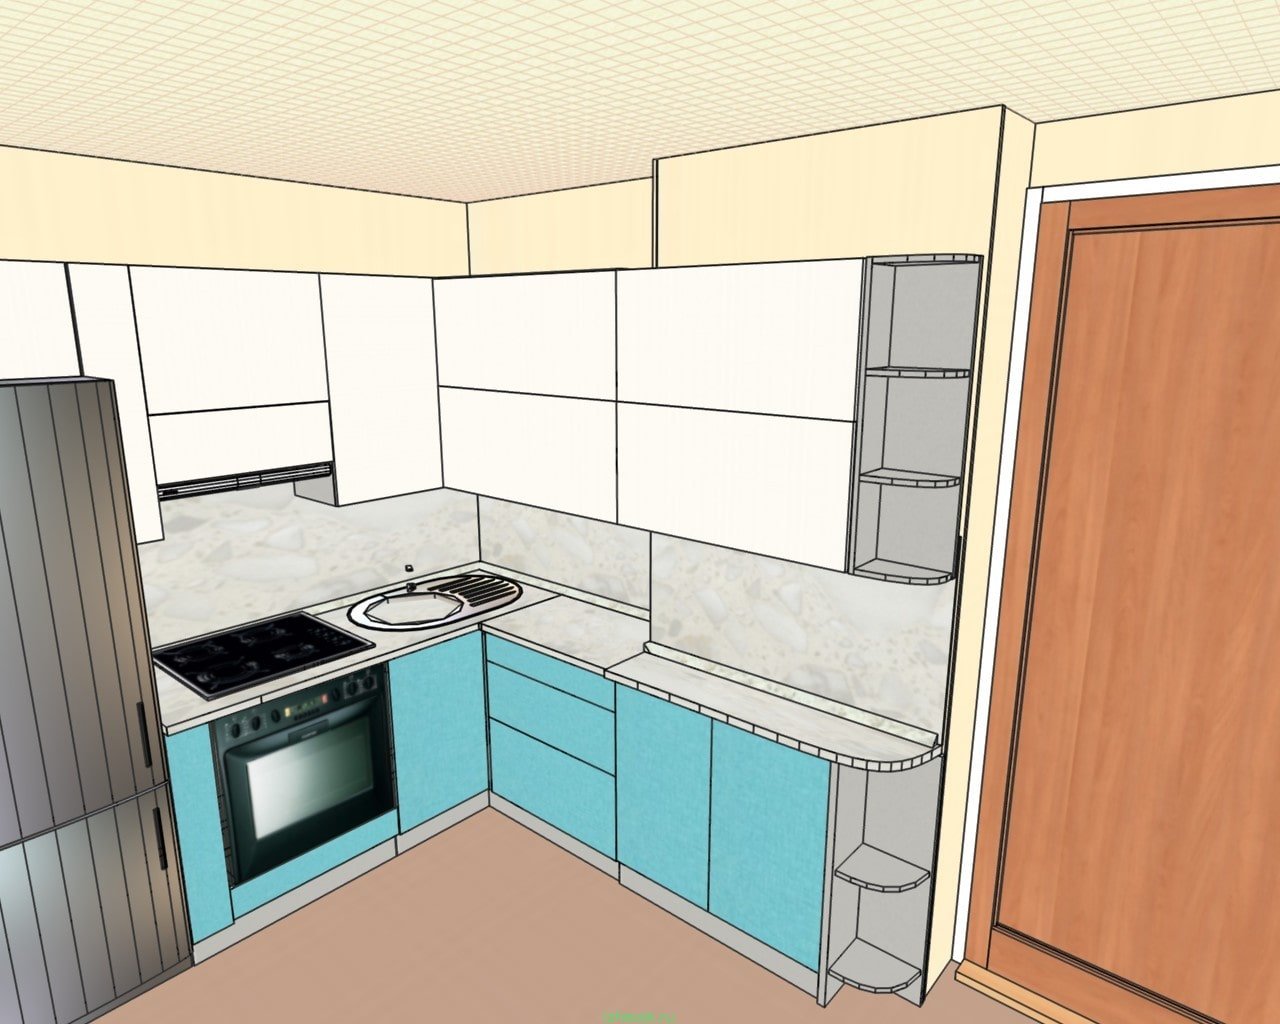 кухни с воздуховодом планировки п44 дизайн